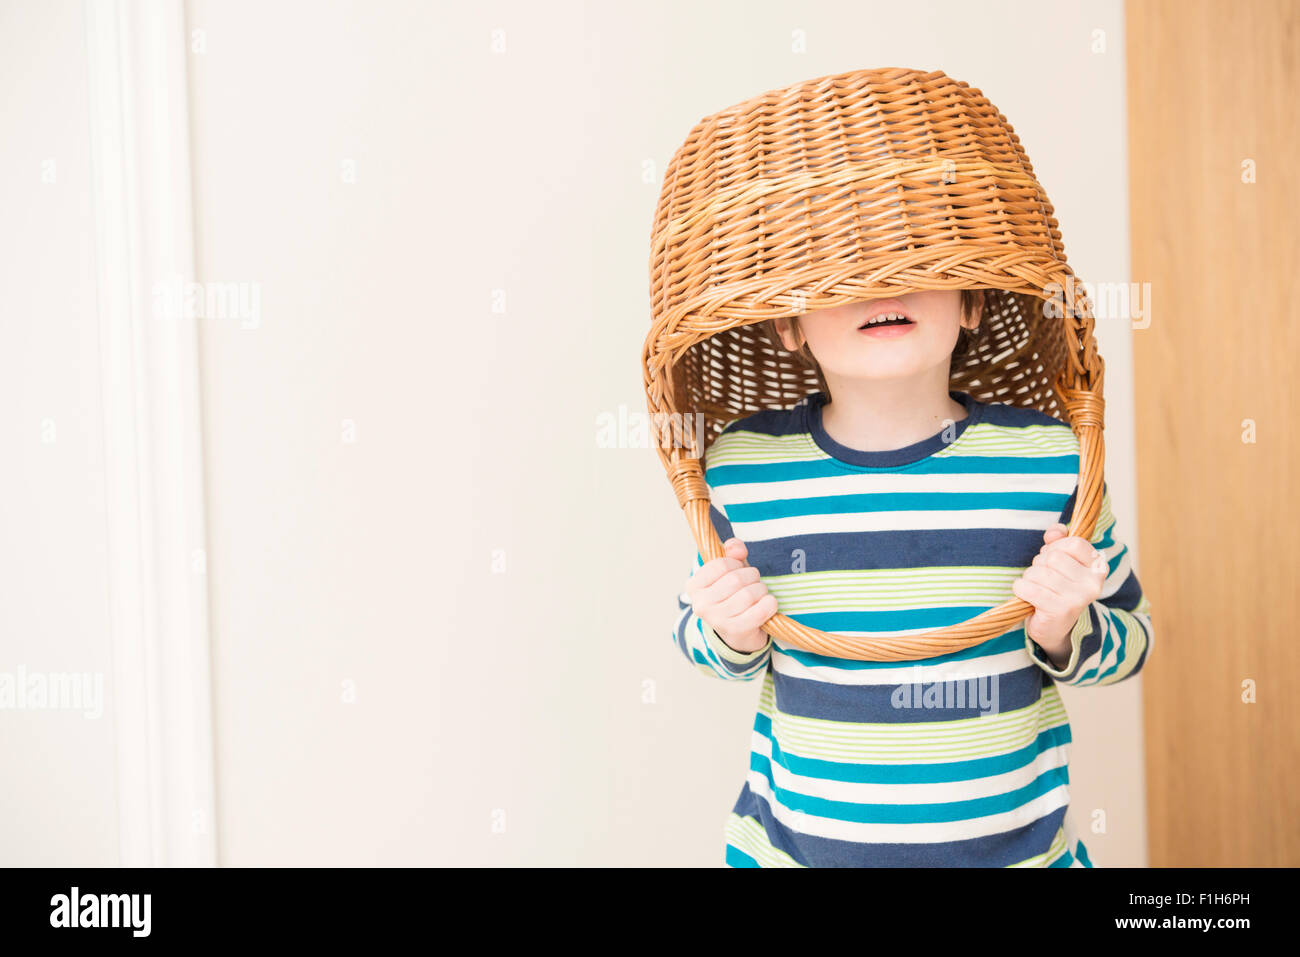 Petite fille jouant et holding panier en osier sur la tête. Image conceptuelle de l'enfance le plaisir, fantaisie et d'imagination. Banque D'Images